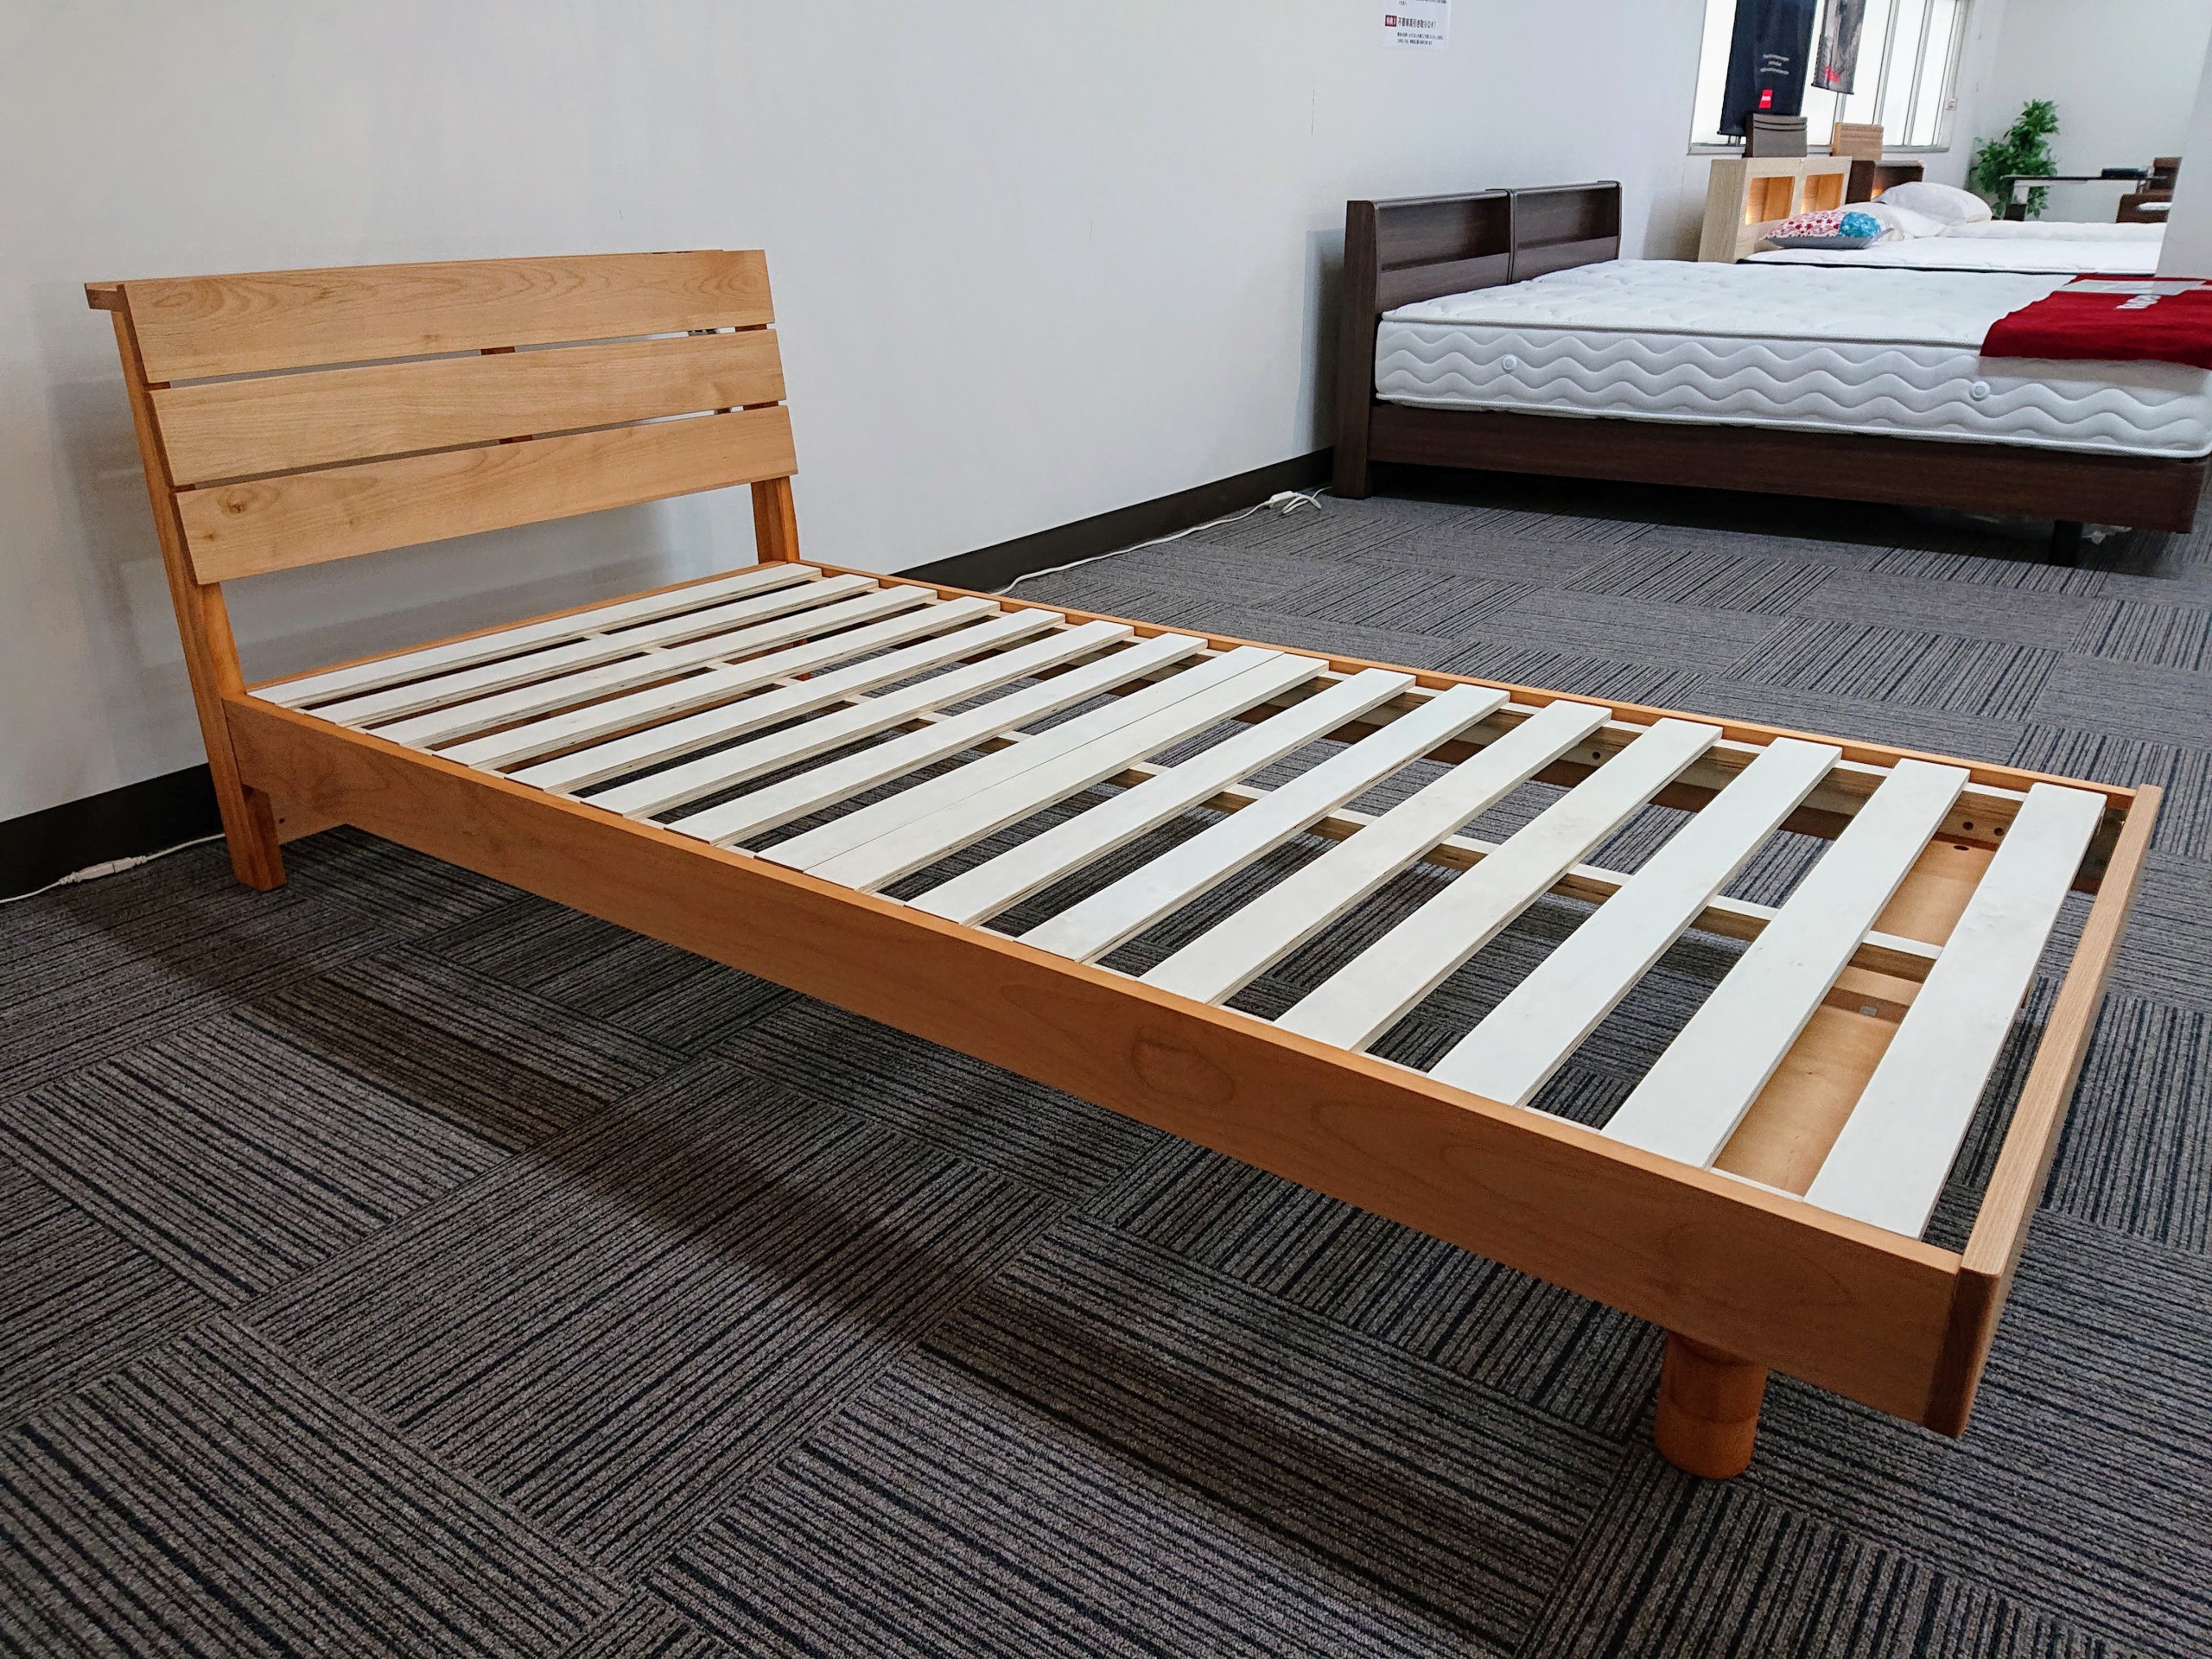 アルダー材の無垢材を使った温かみのあるシンプルなデザインのベッドフレームのご紹介です。 | LIFE STYLE SHOP 伊藤家具